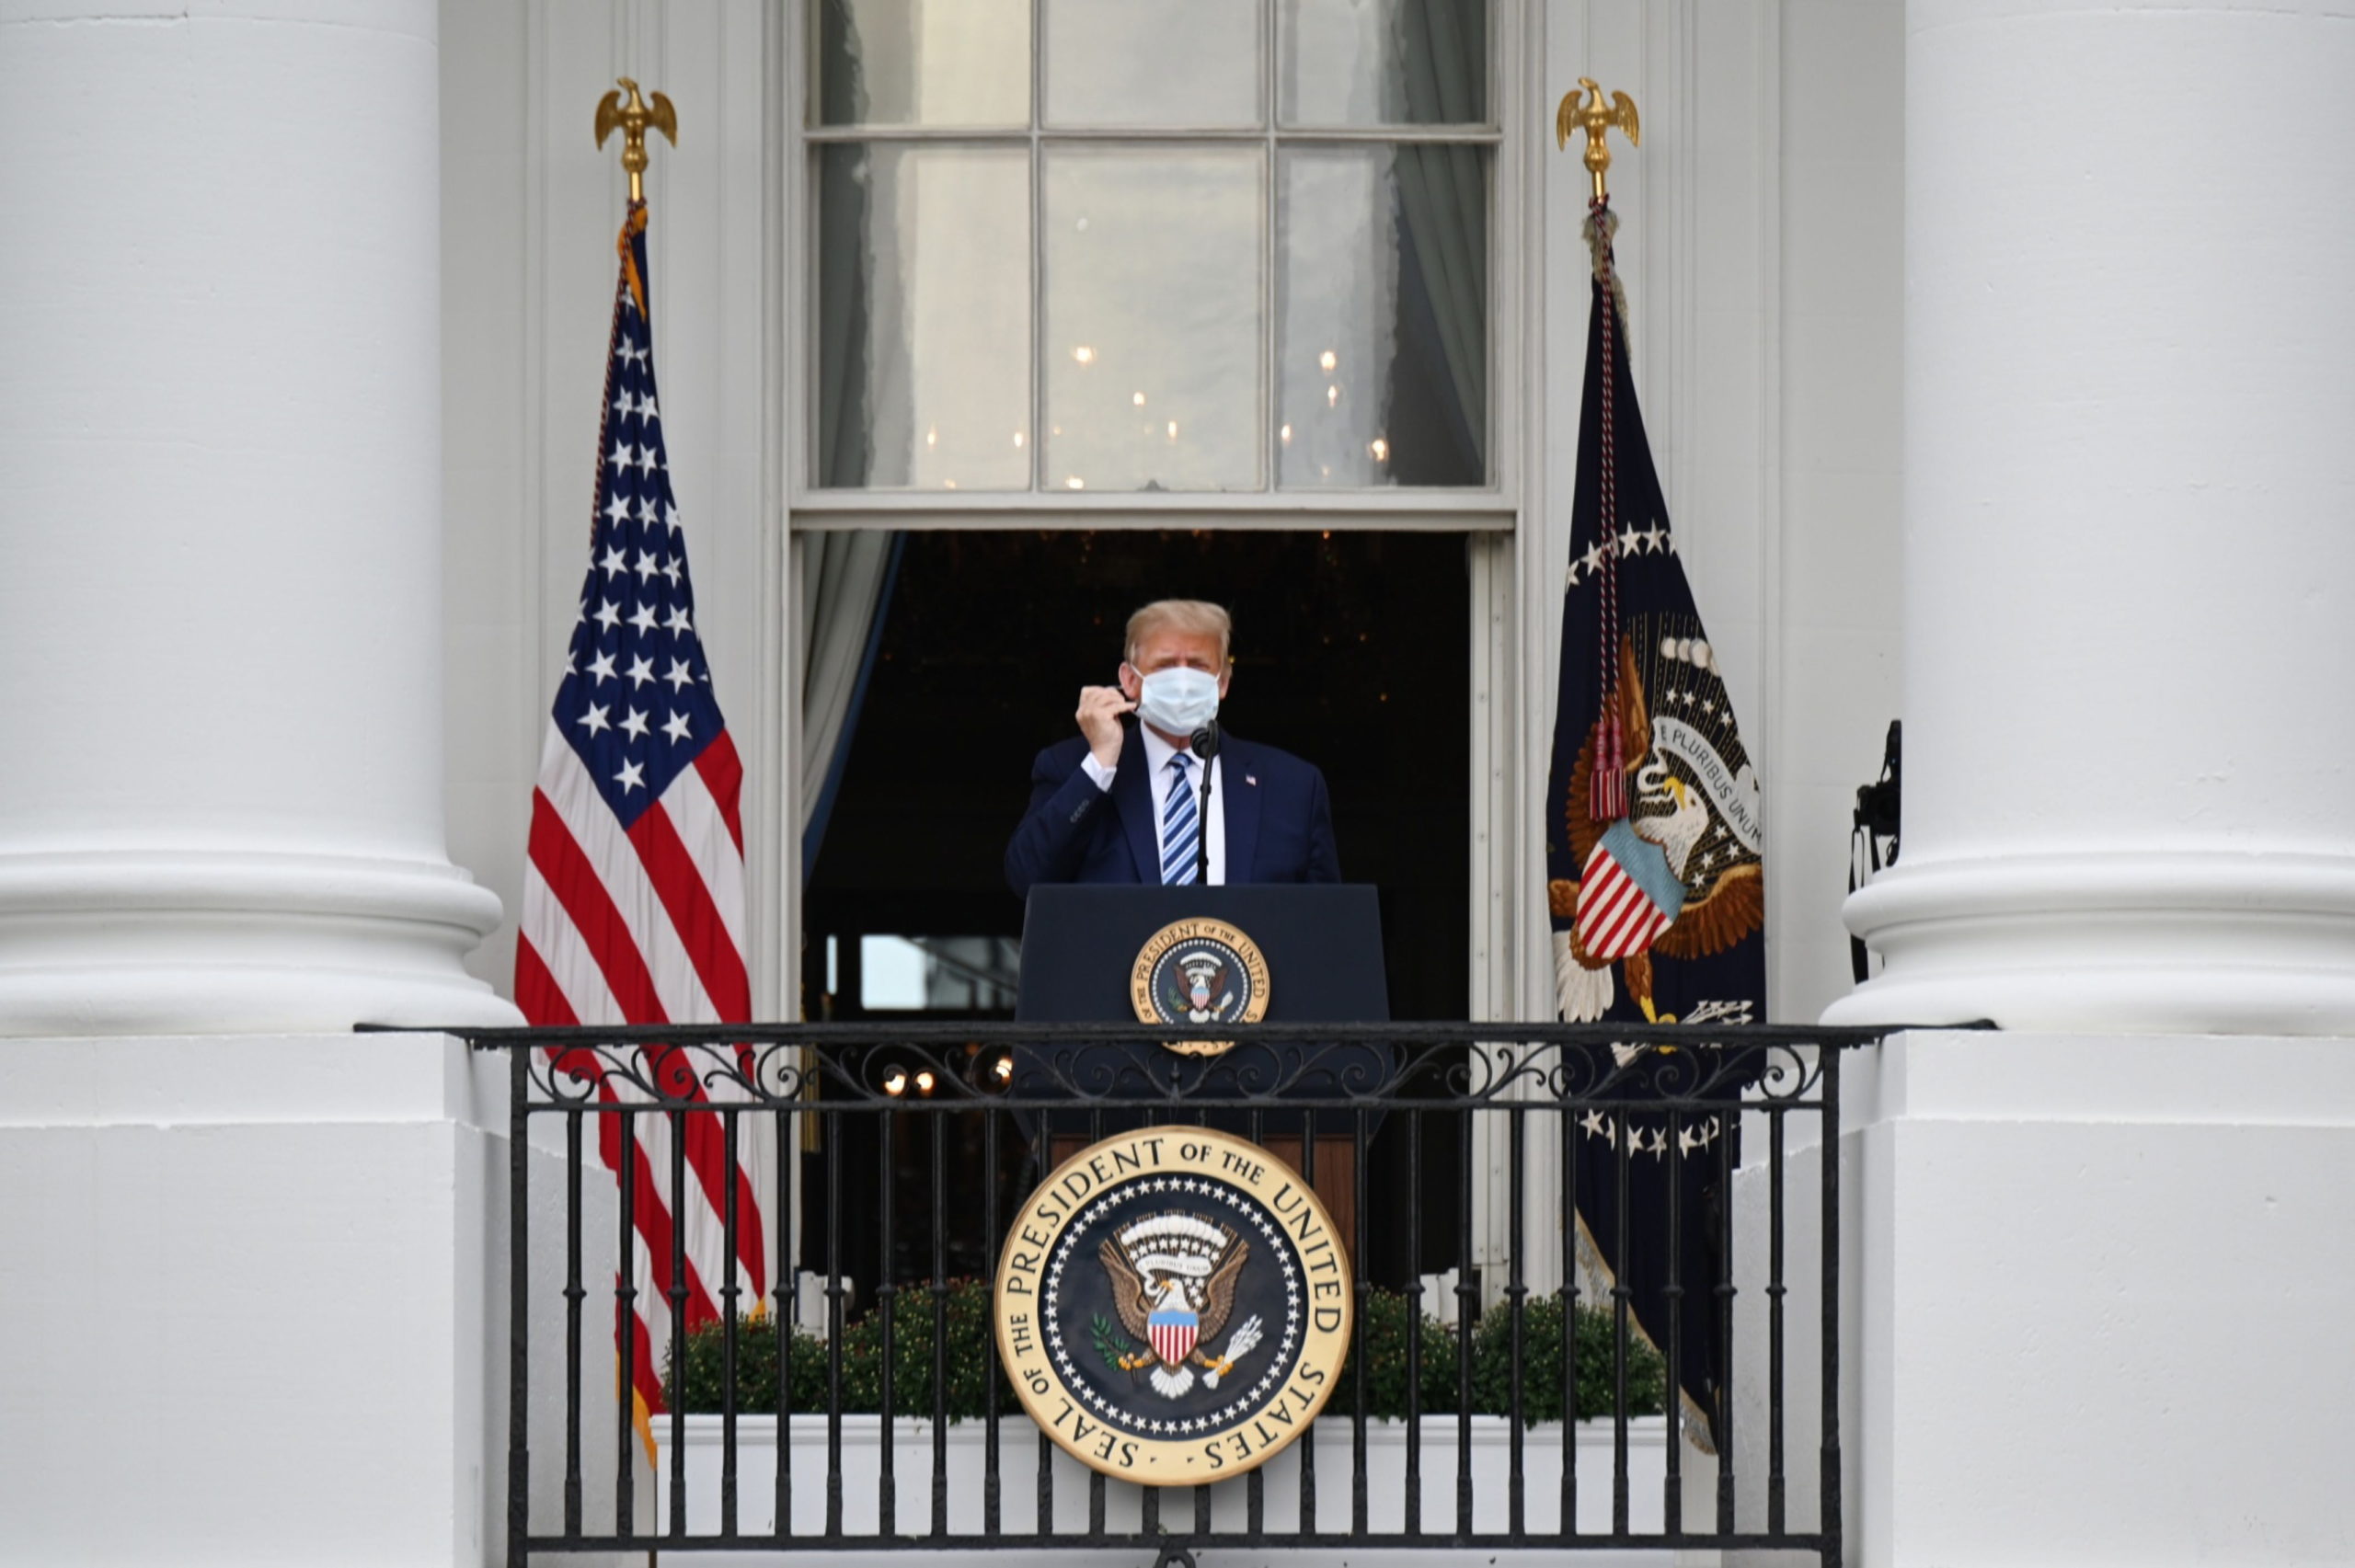 "Είμαι καλά", δηλώνει ο Ντόναλντ Τραμπ από το μπαλκόνι του Λευκού Οίκου